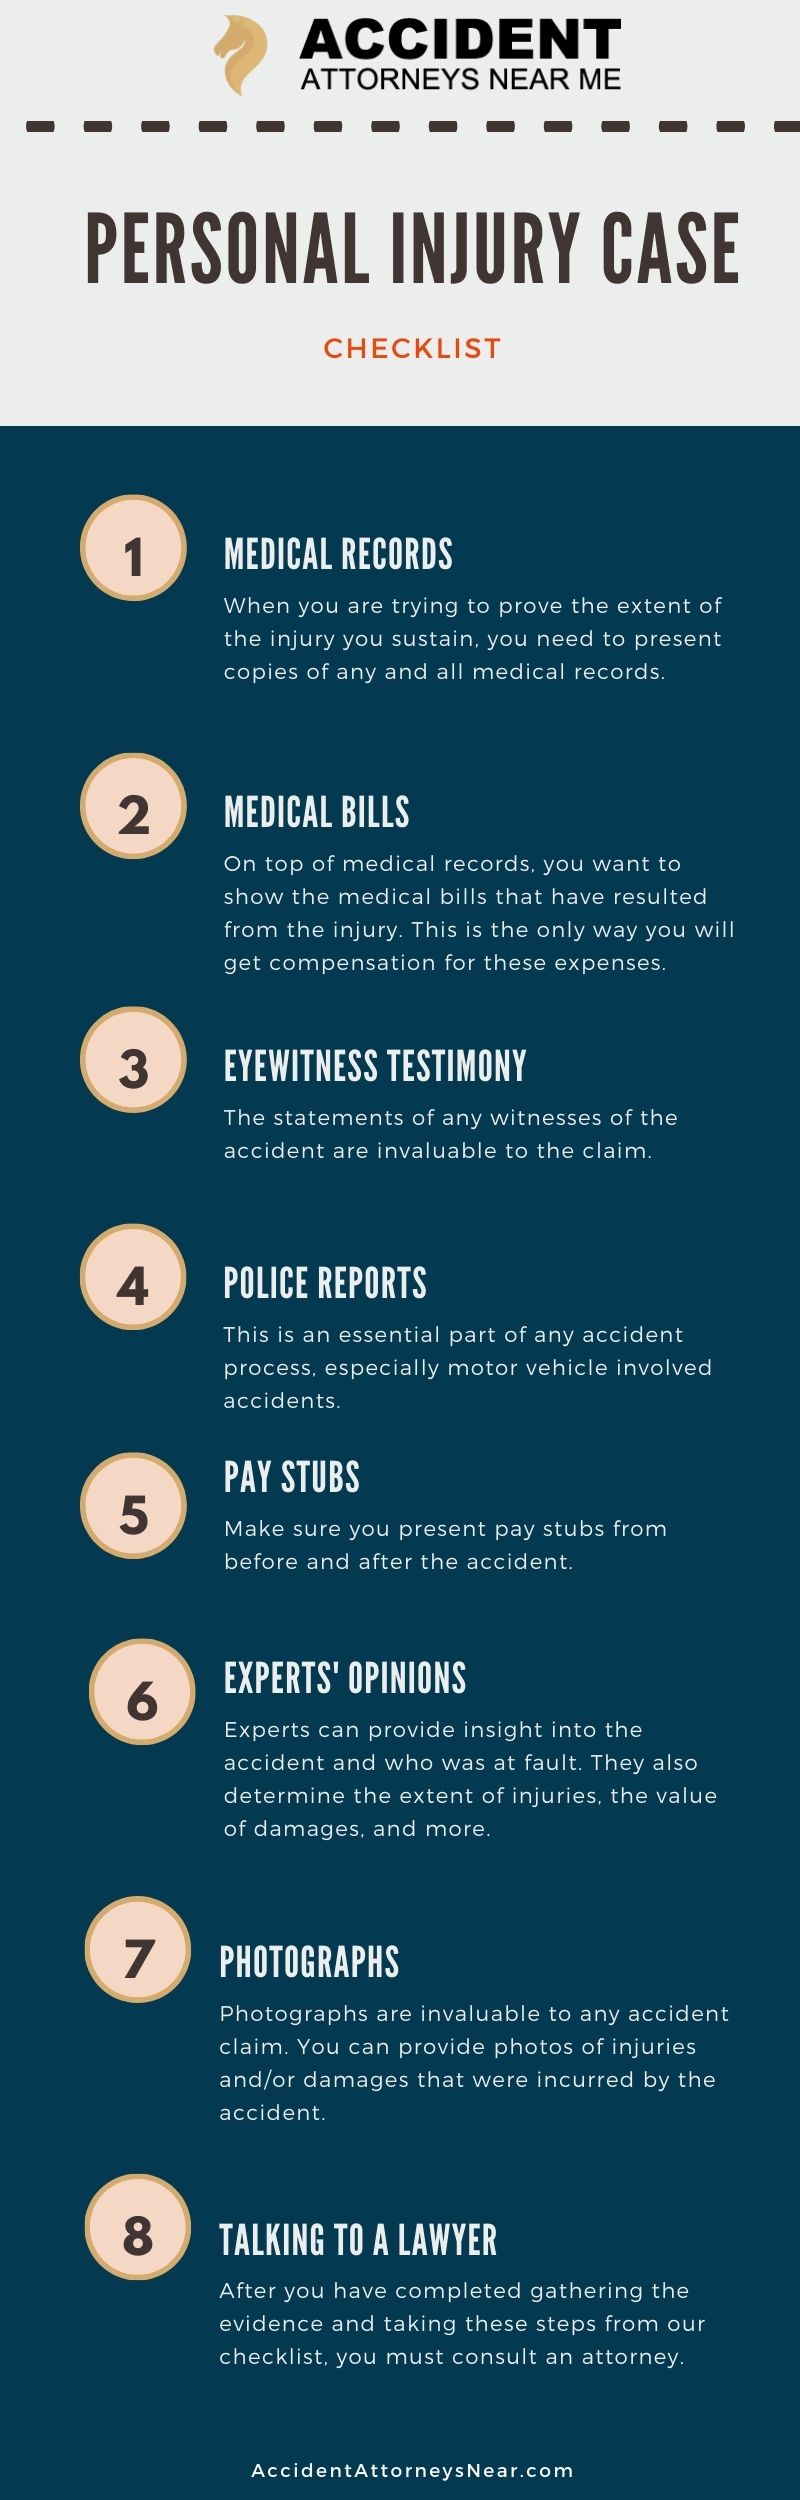 Personal injury case checklist